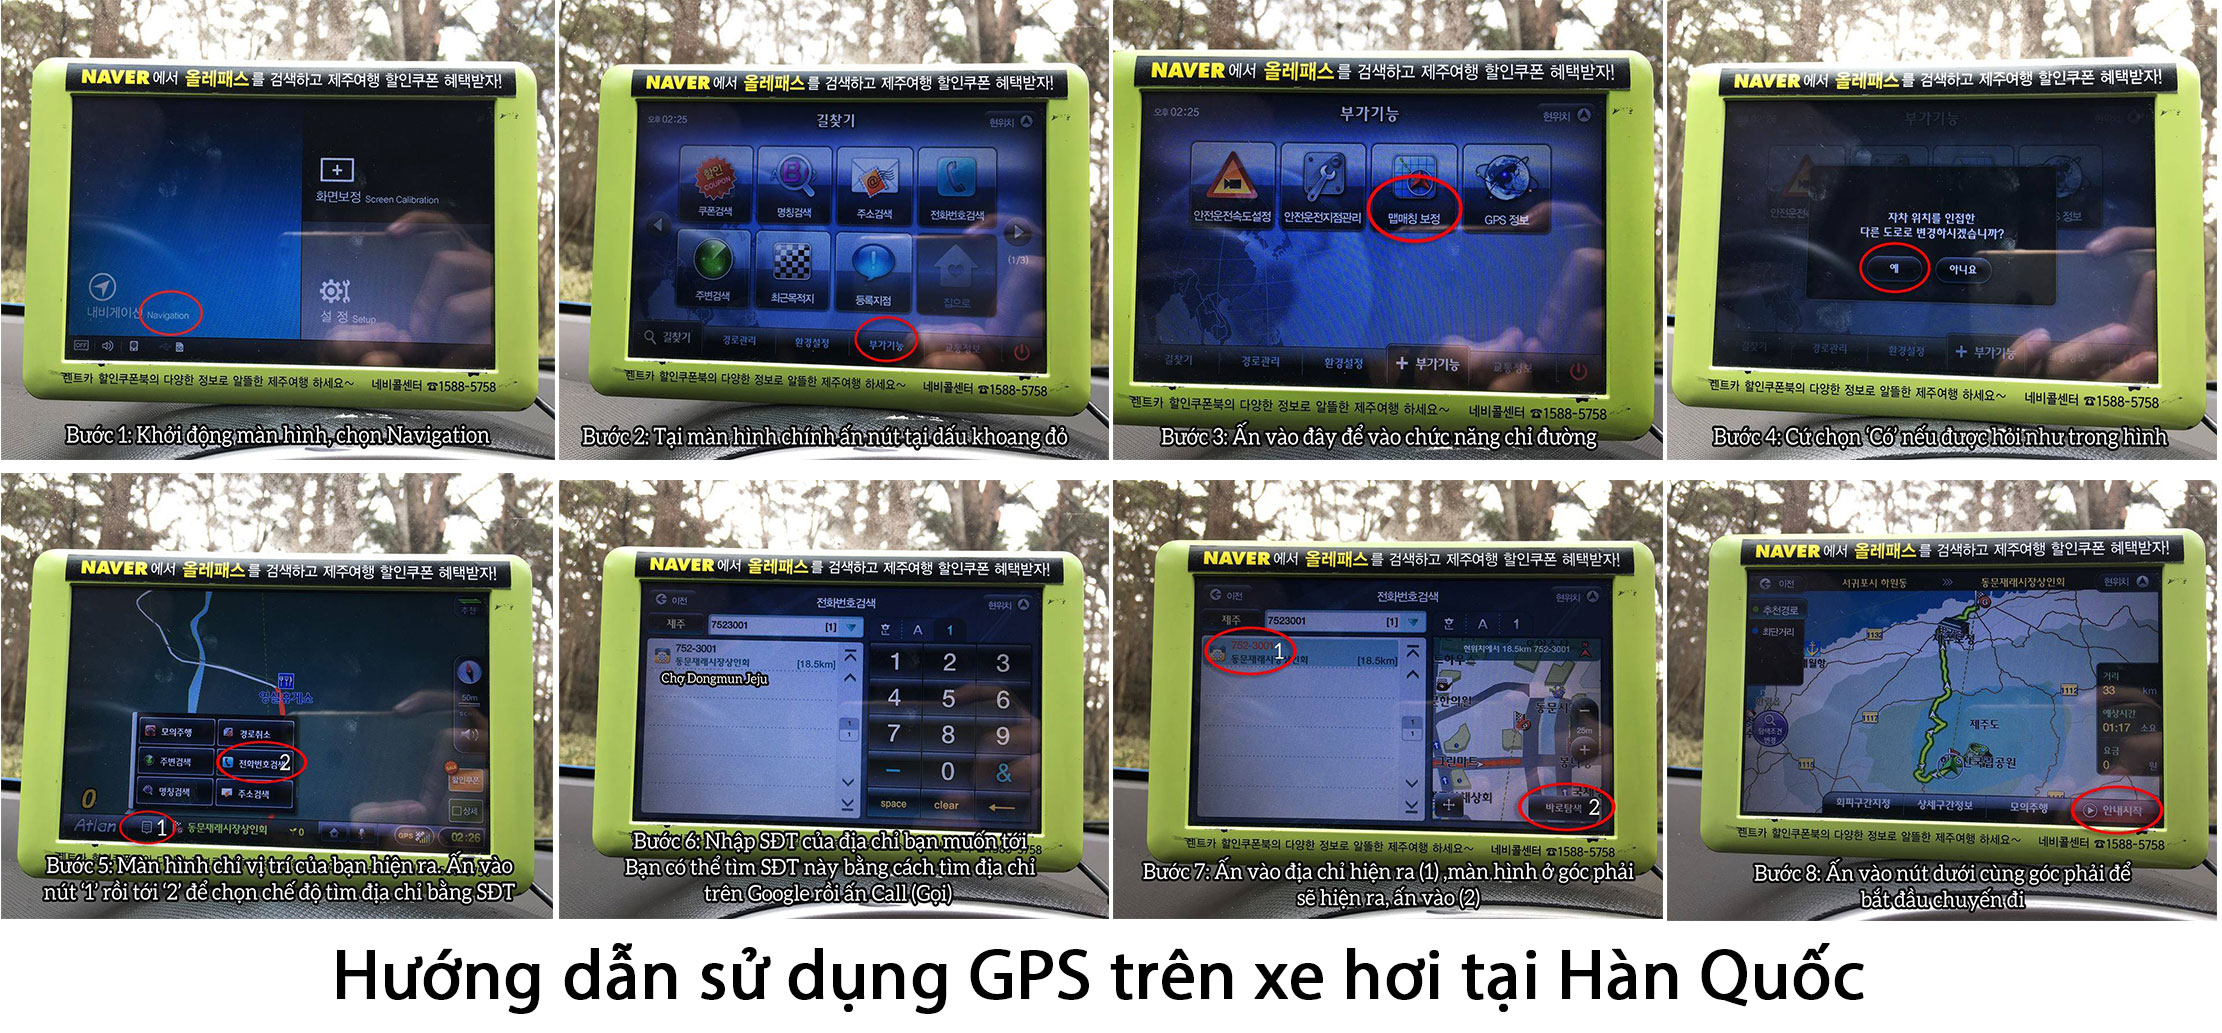 Sử dụng GPS trên xe ở Hàn Quốc